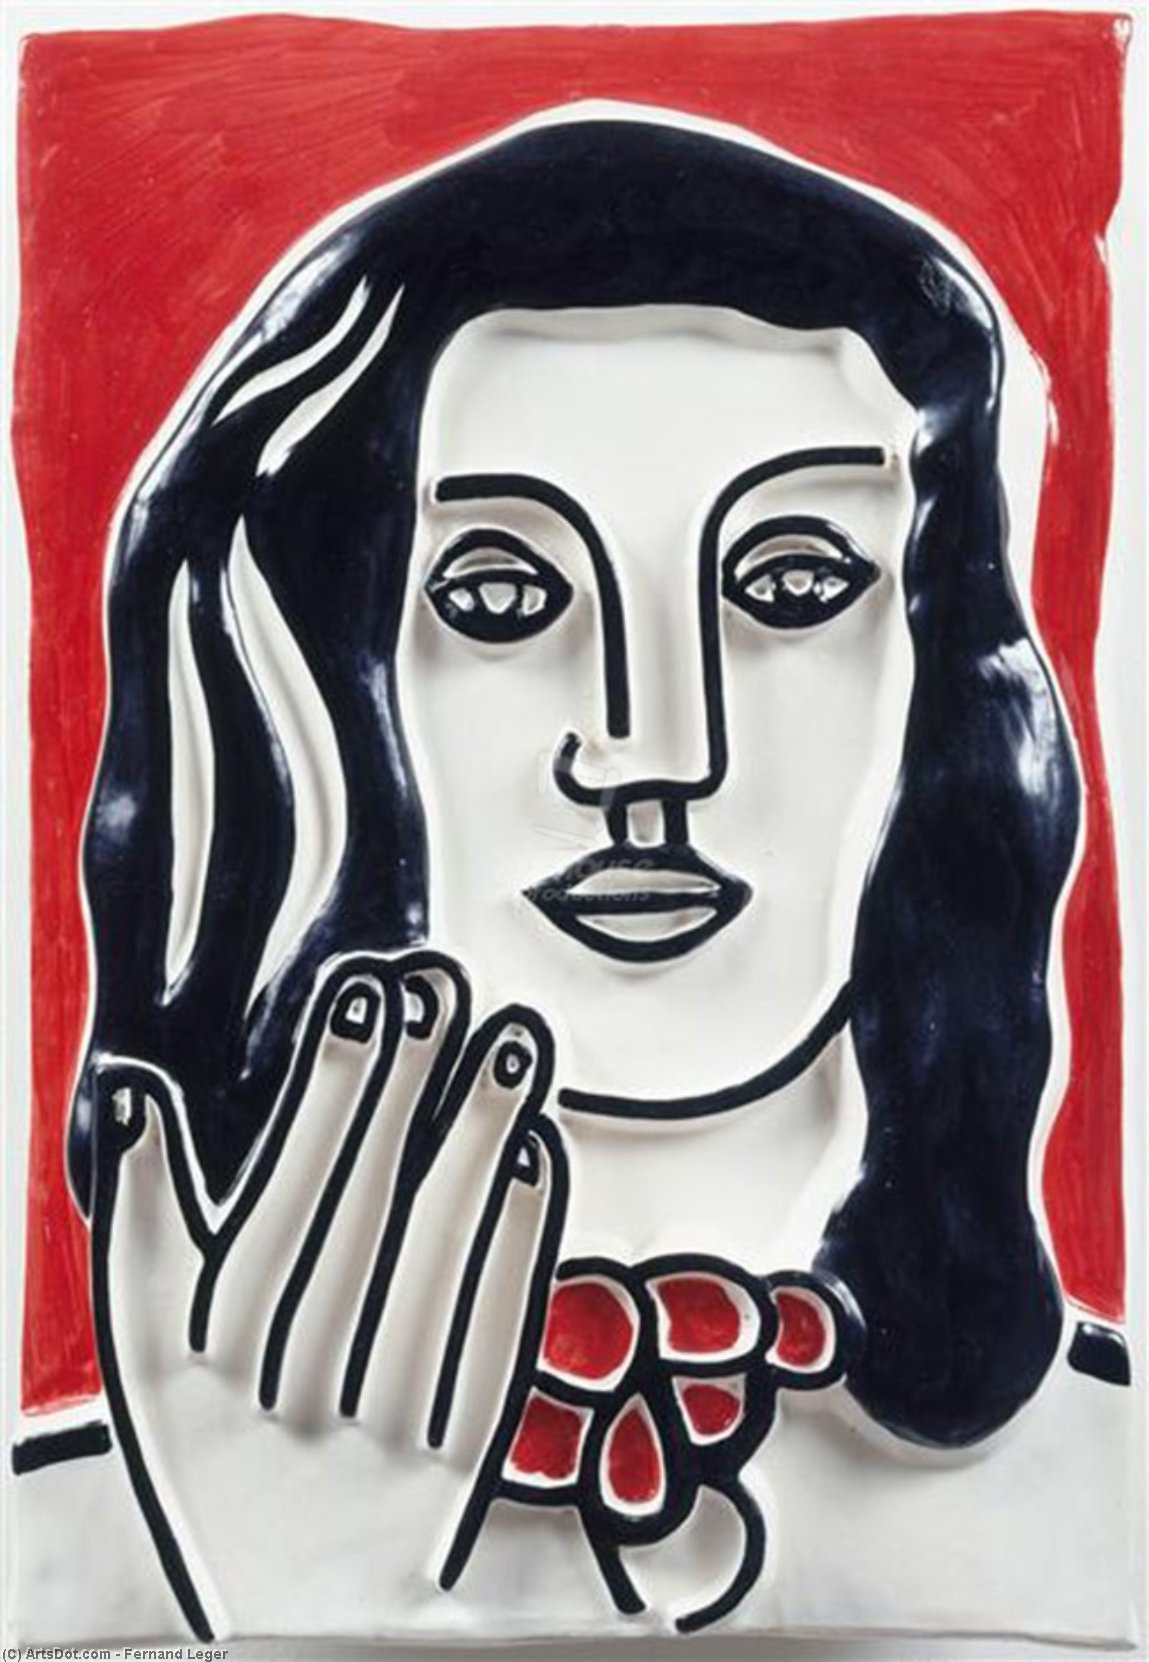 Wikoo.org - موسوعة الفنون الجميلة - اللوحة، العمل الفني Fernand Leger - Face by hand on a red background